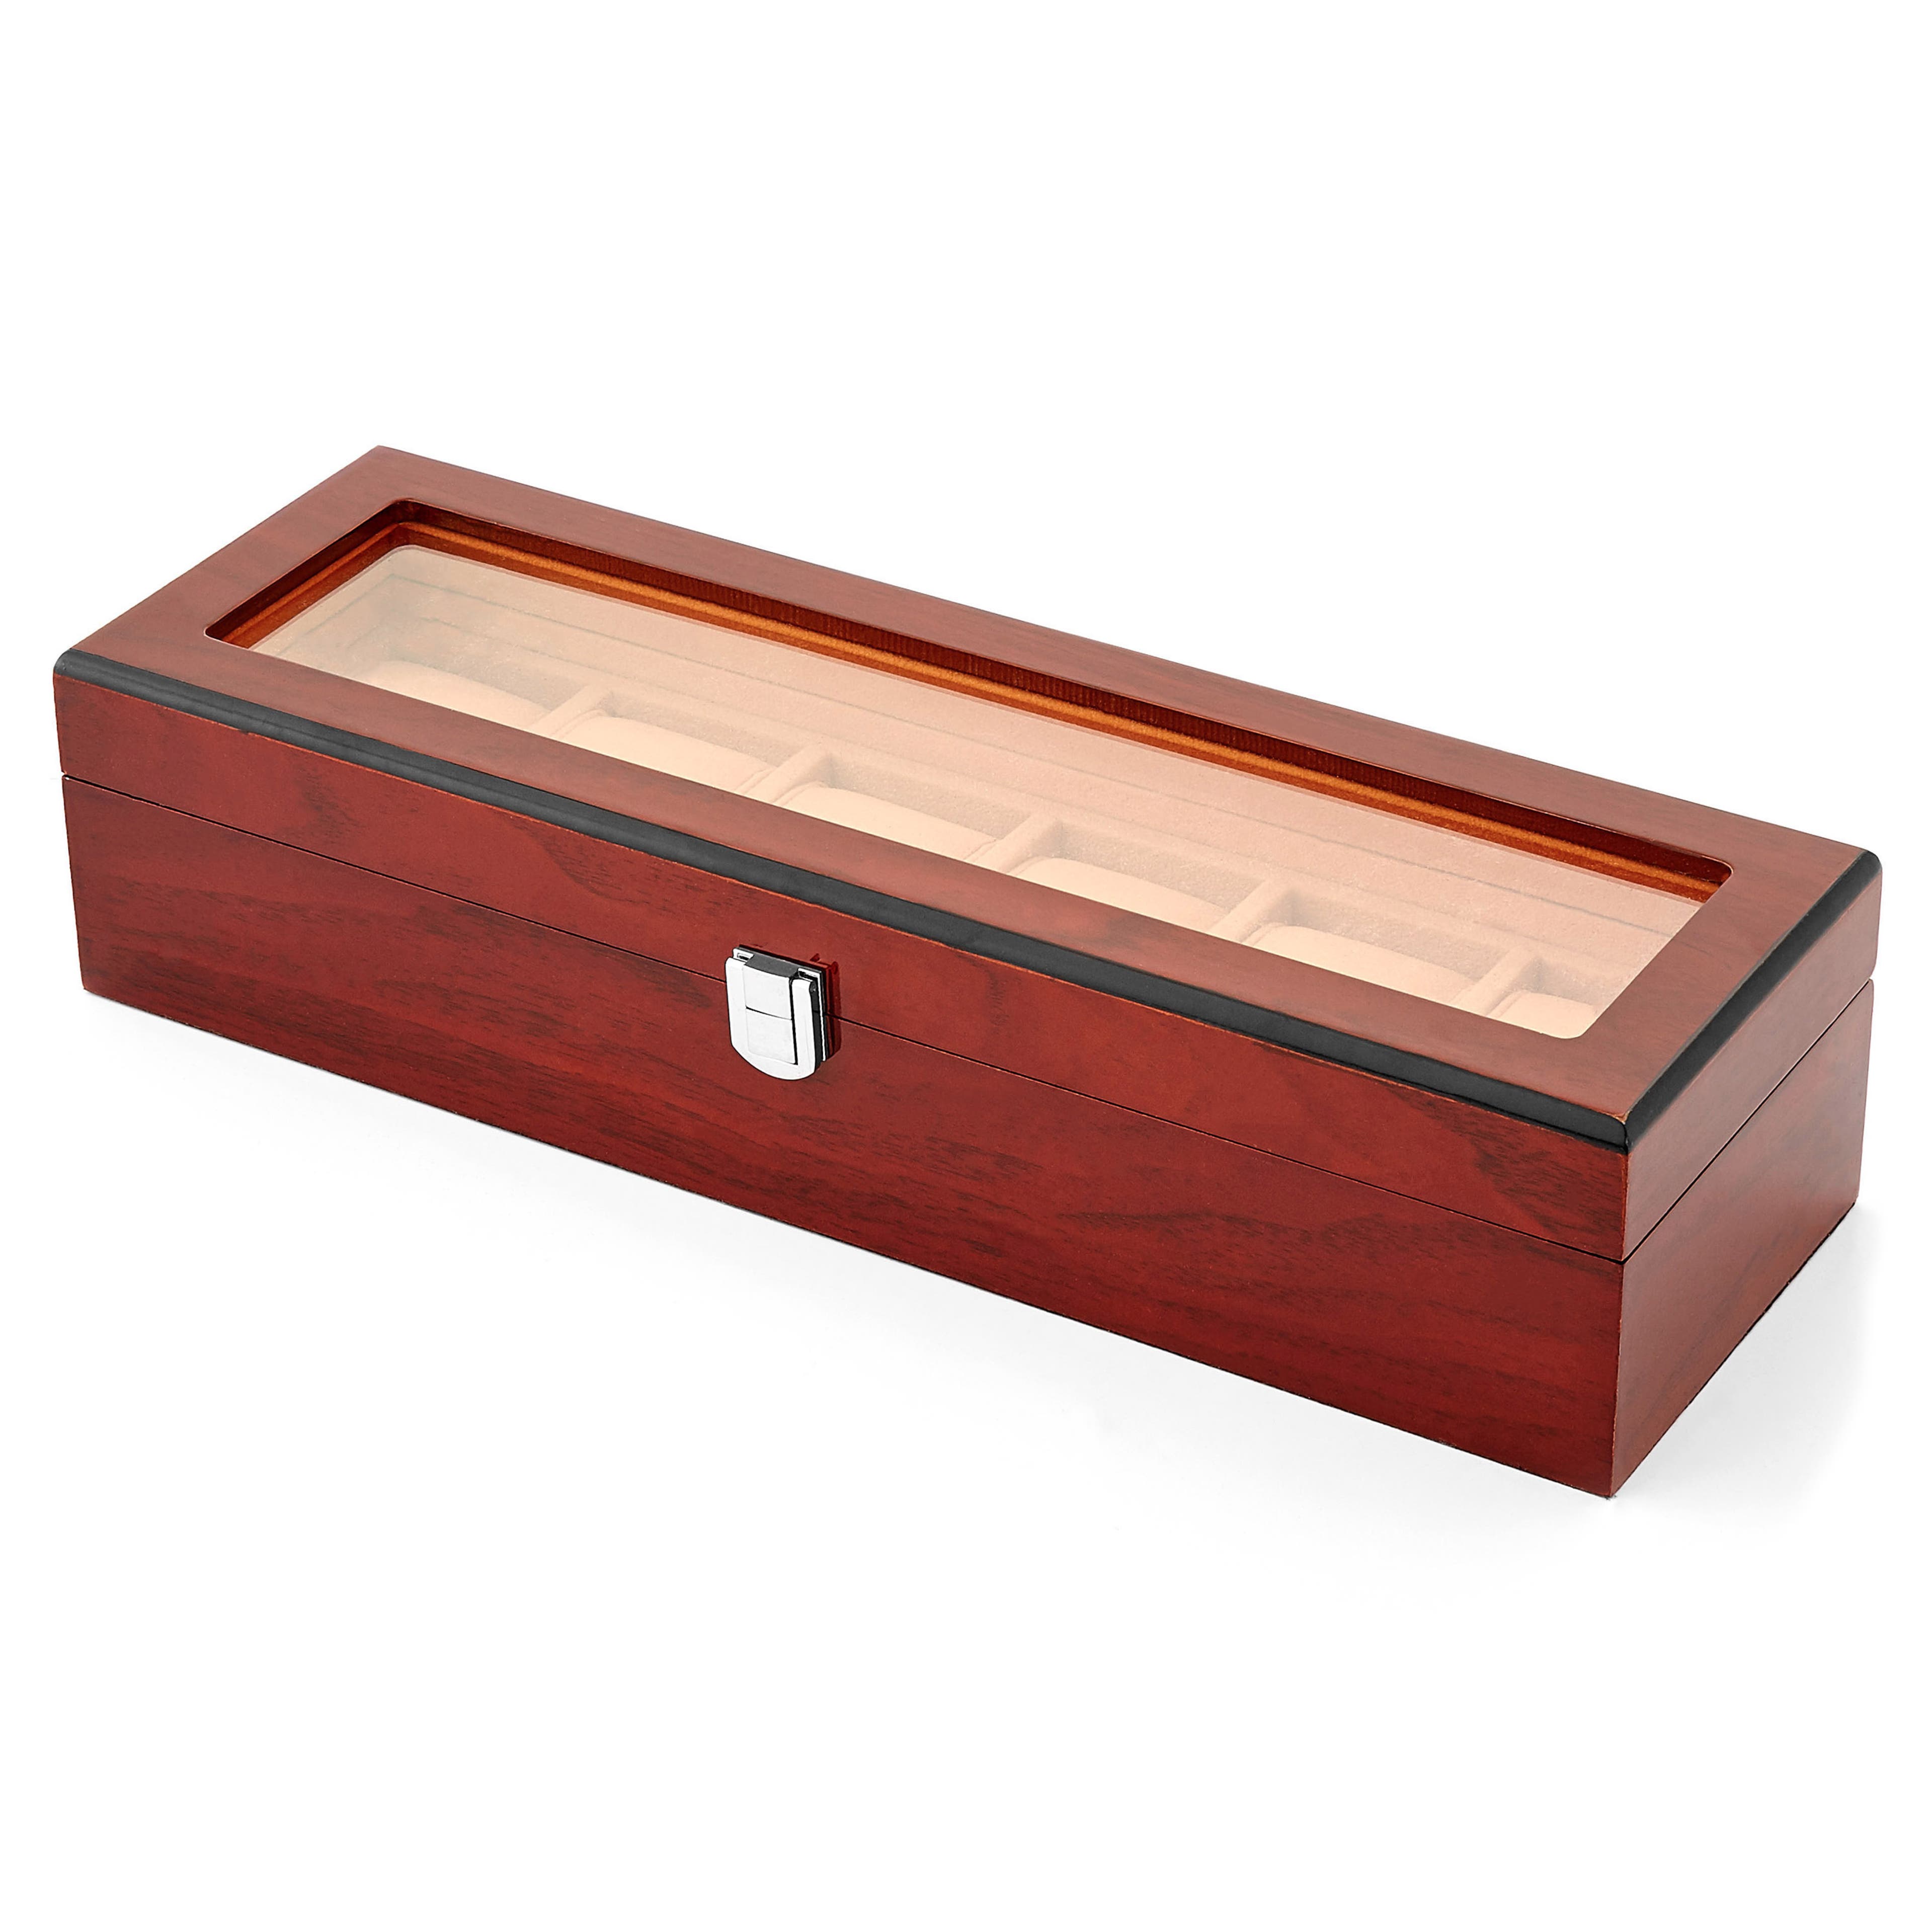 Luxusní box na hodinky z červeného dřeva - 6 hodinky